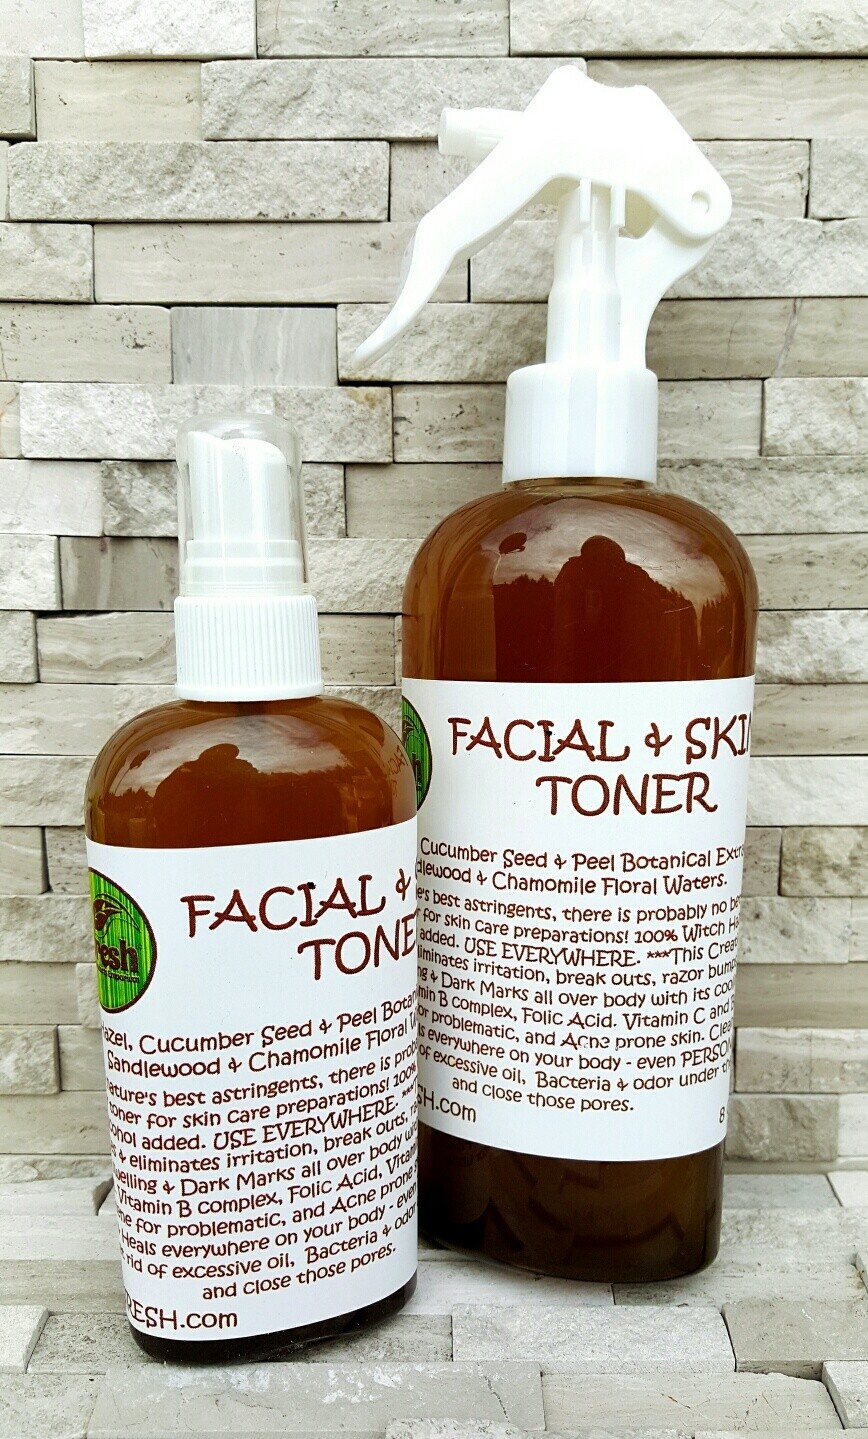 Facial & Skin Toner